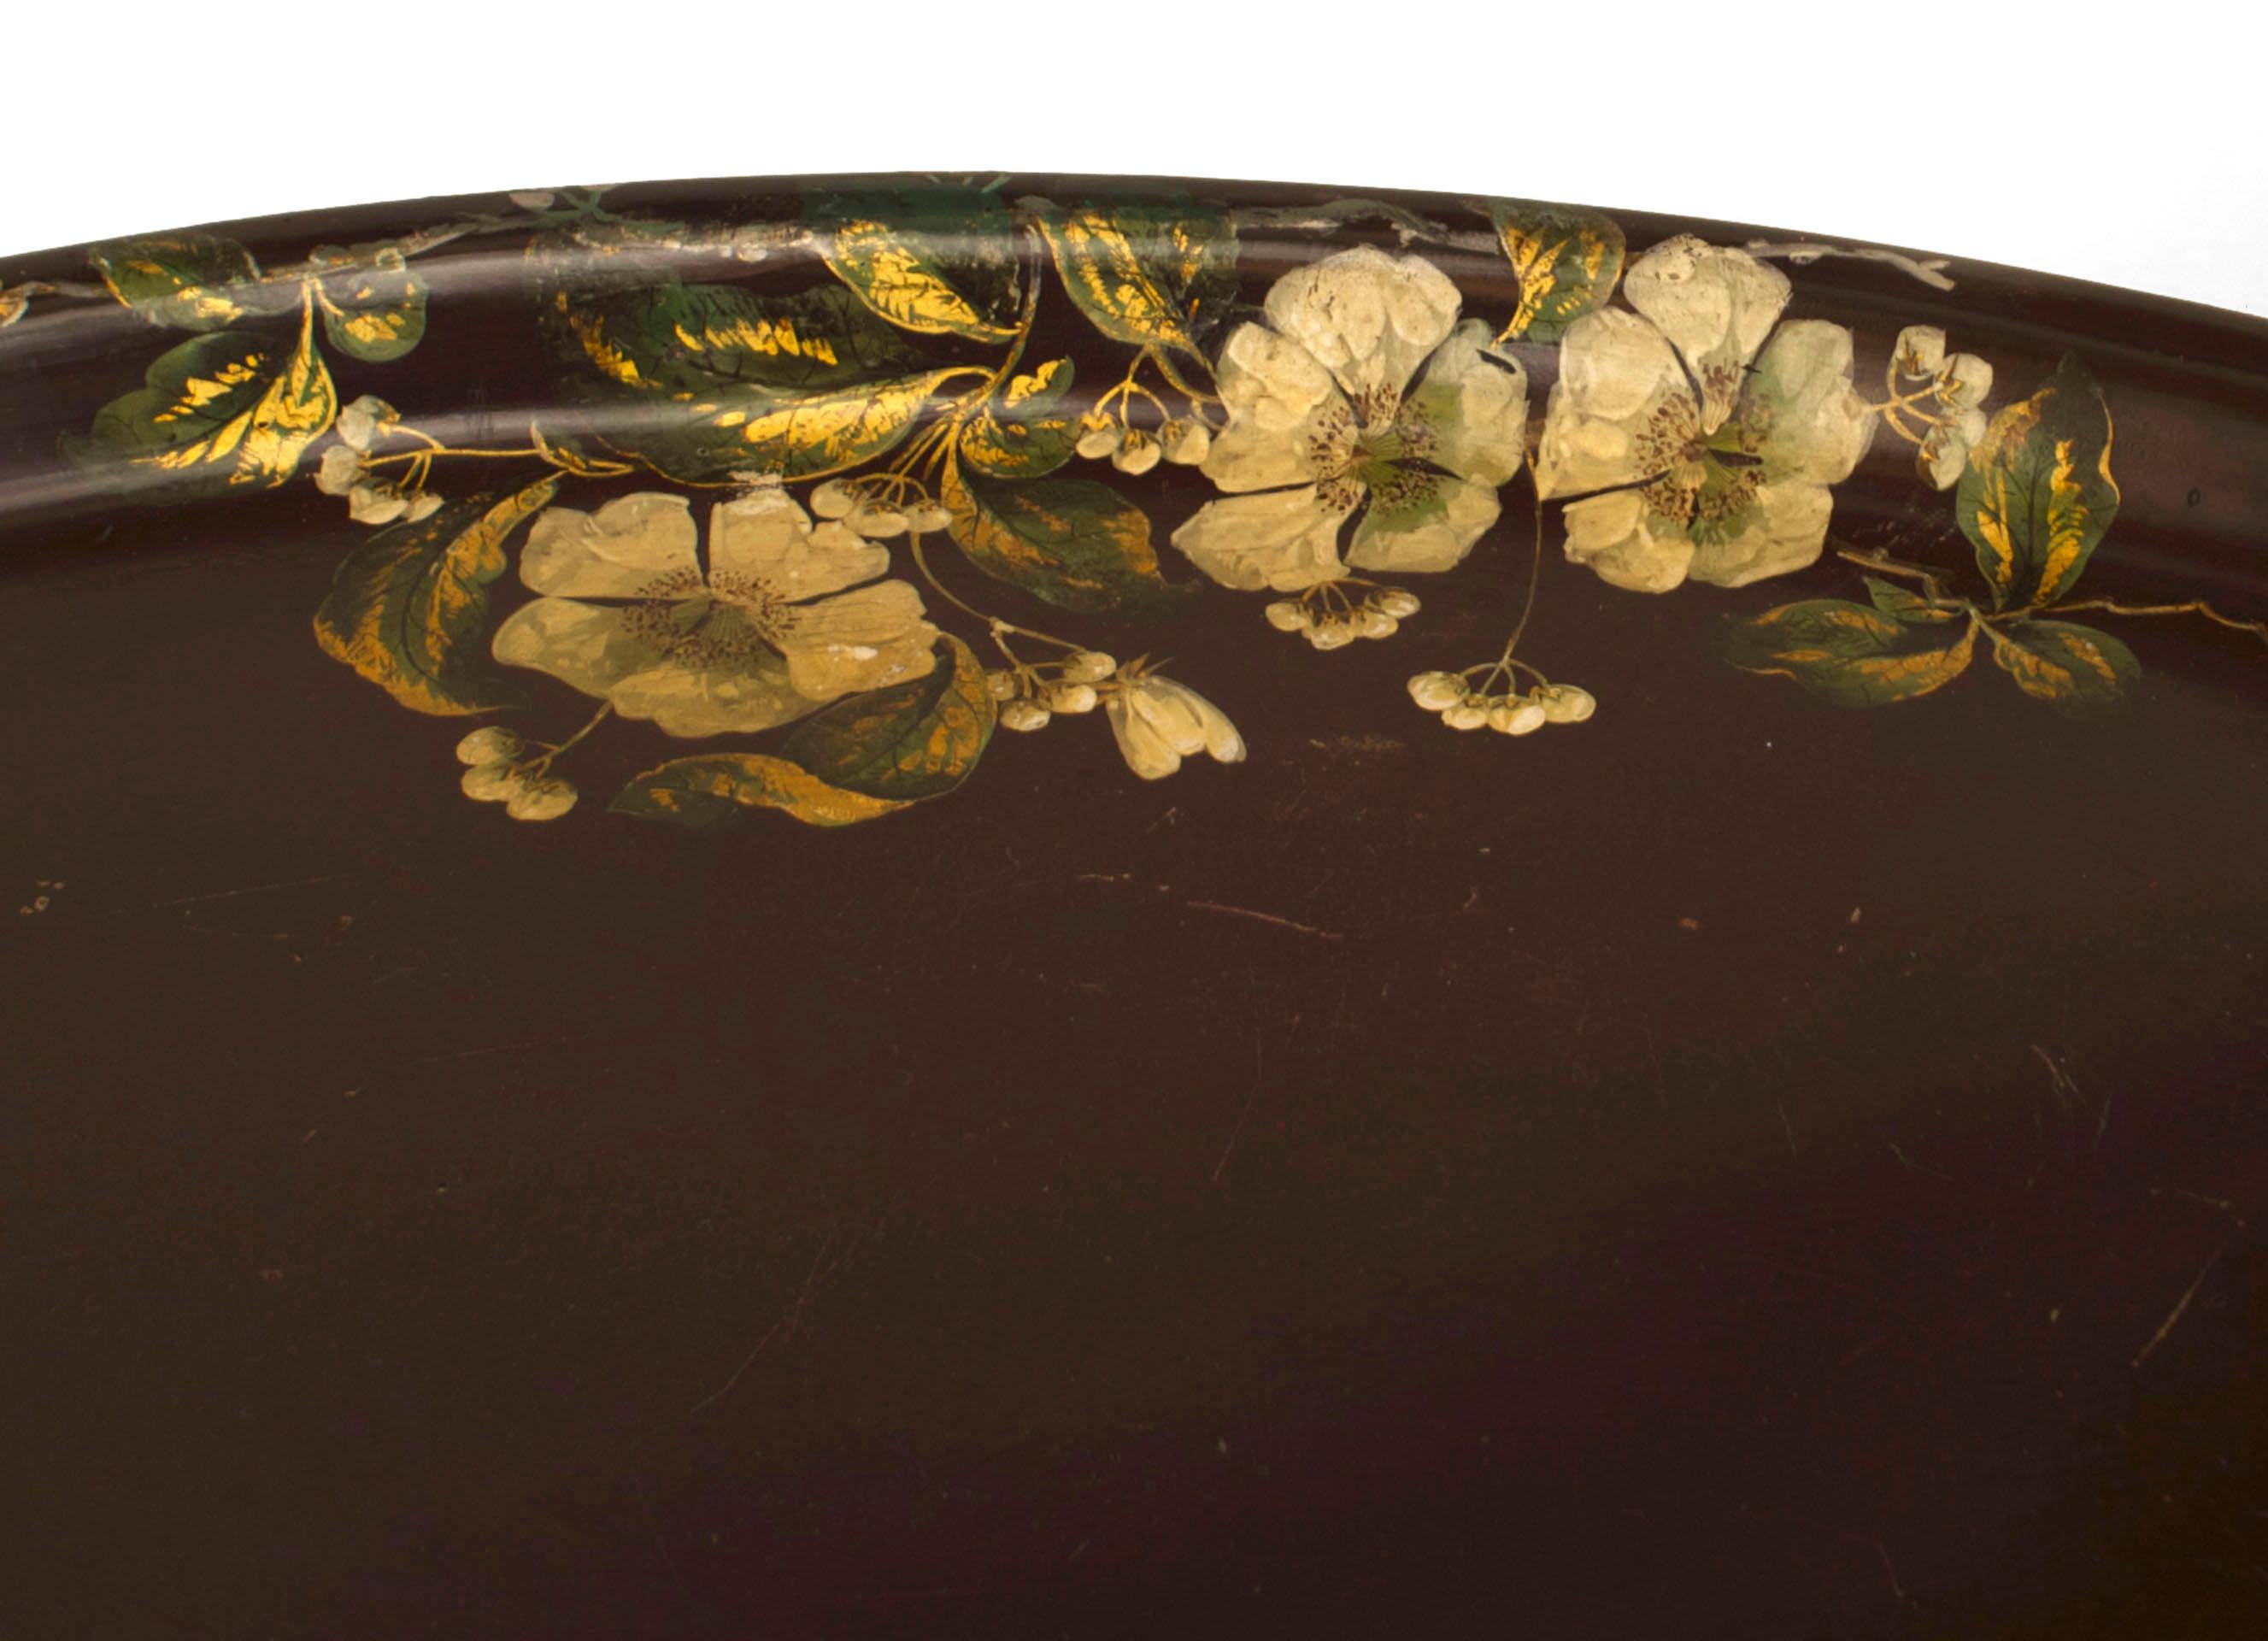 Ovaler, dunkelkastanienbrauner Couchtisch aus Pappmaché im viktorianischen Stil (20. Jh.) mit floraler Zierbordüre und einem Sockel aus ebonisiertem Bambusimitat.
